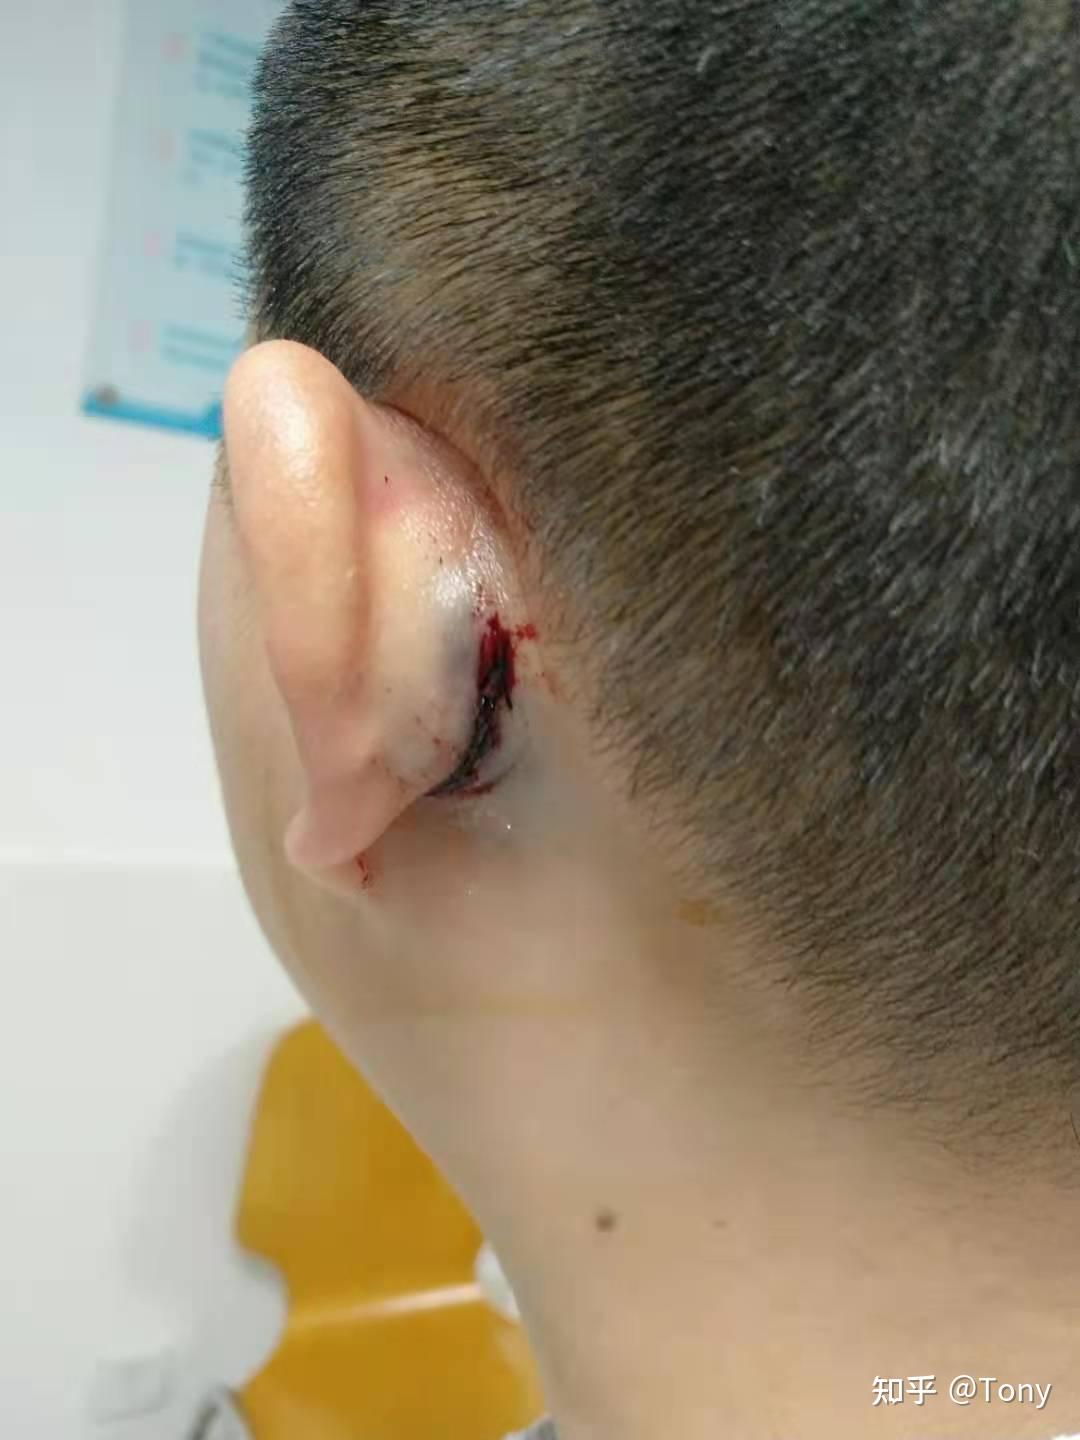 双耳大穿孔我的耳膜修补手术2020年10月9日右耳手术成功11月27日左耳